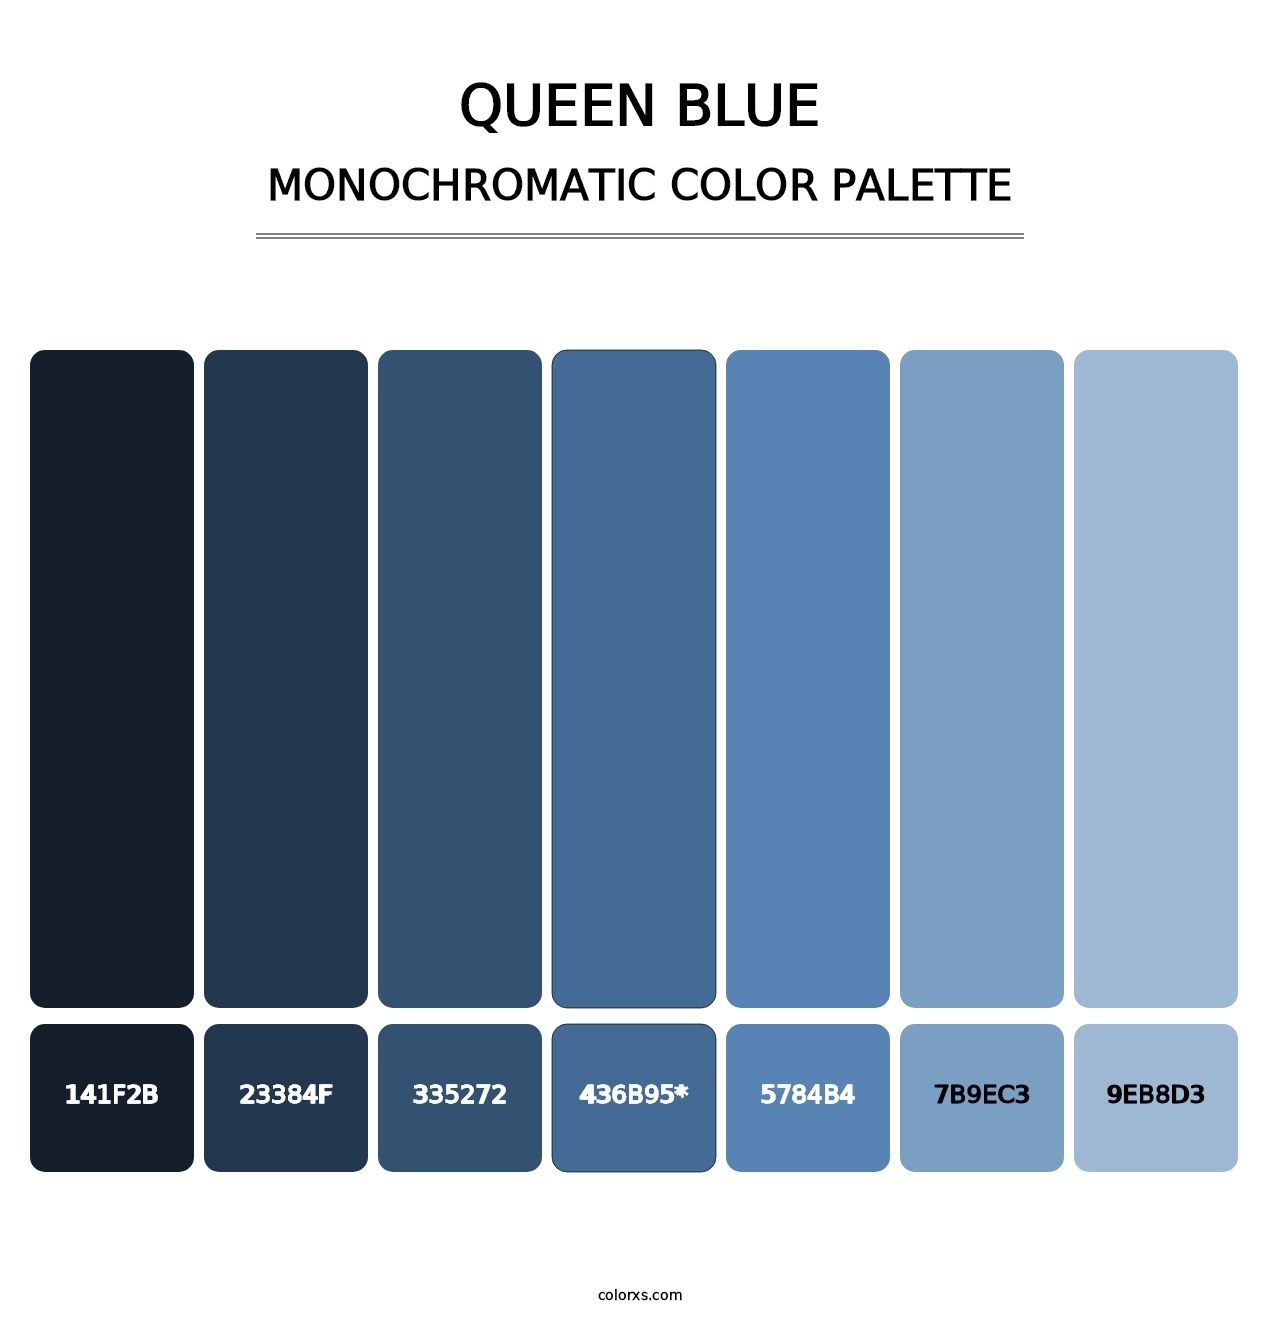 Queen Blue - Monochromatic Color Palette